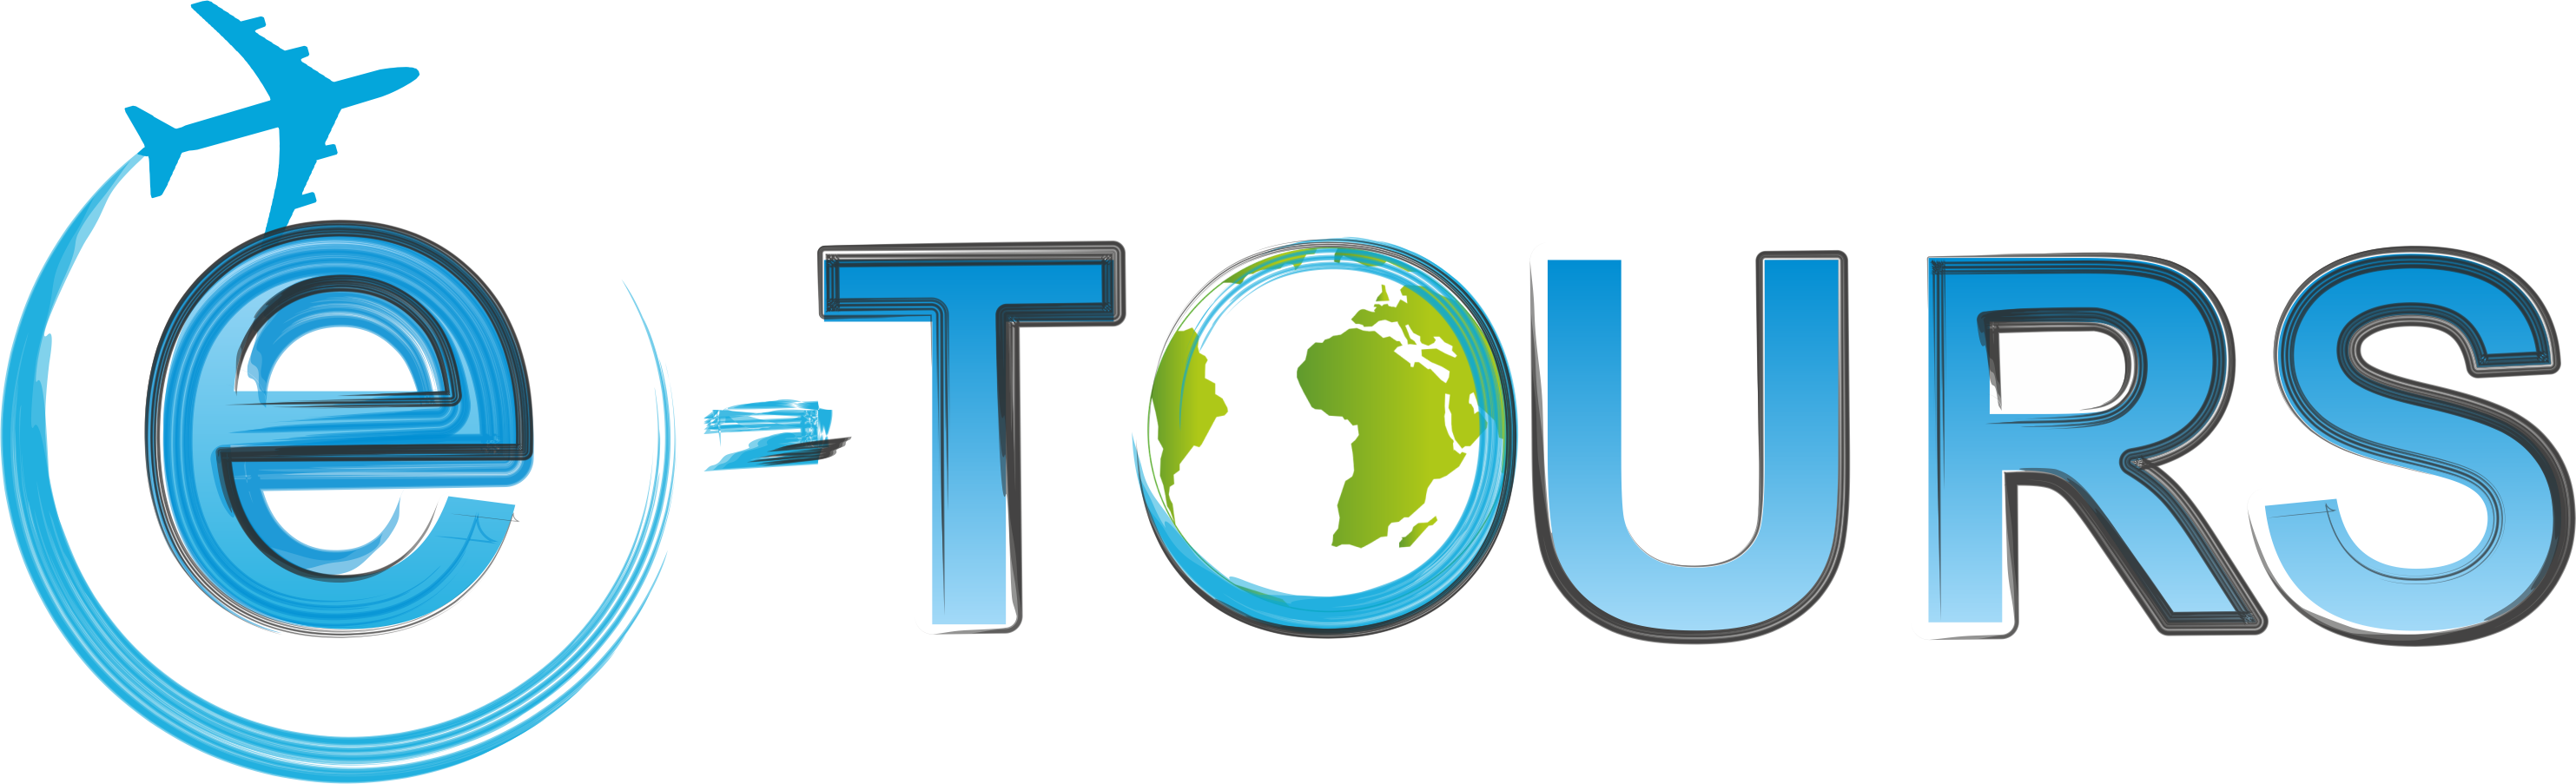 News - Лого На Туристическа Агенция Clipart (2966x903), Png Download